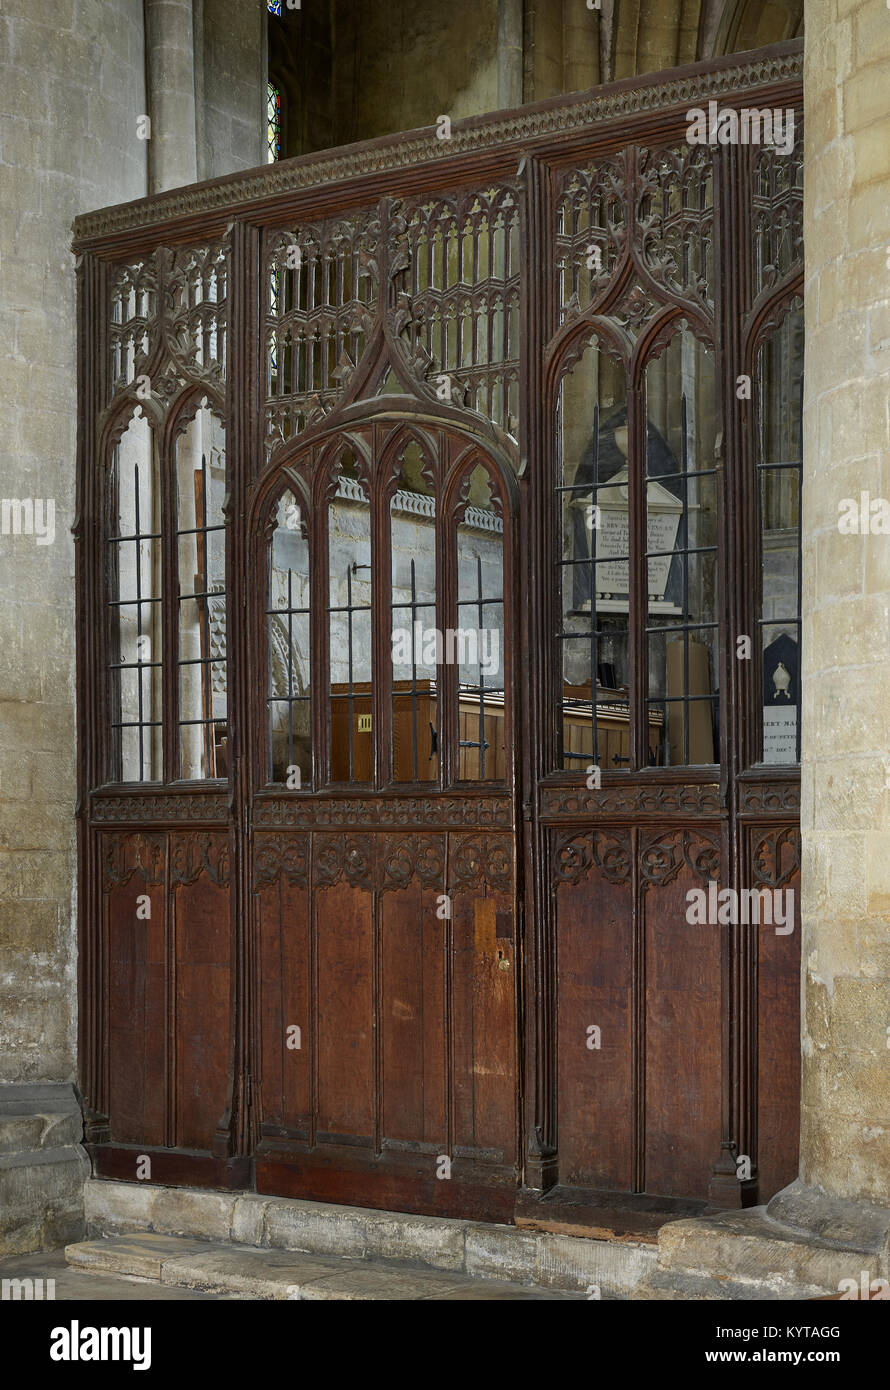 La catedral de Peterborough. Parte de la pantalla de madera del siglo xv originalmente separando el coro de la nave, ahora en el norte de crucero Foto de stock